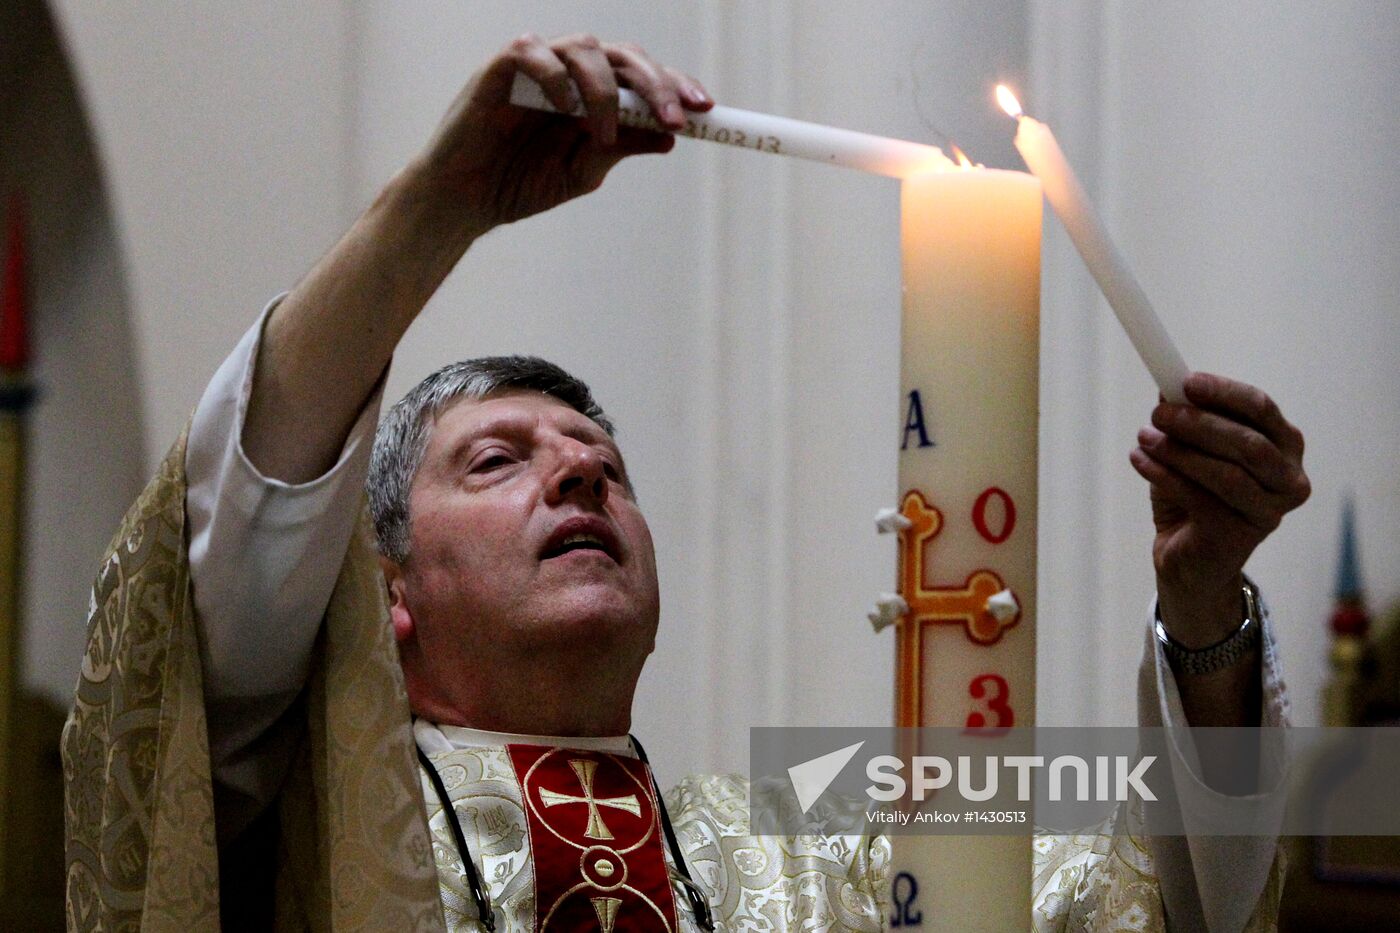 Celebrating Catholic Easter in Novosibirsk